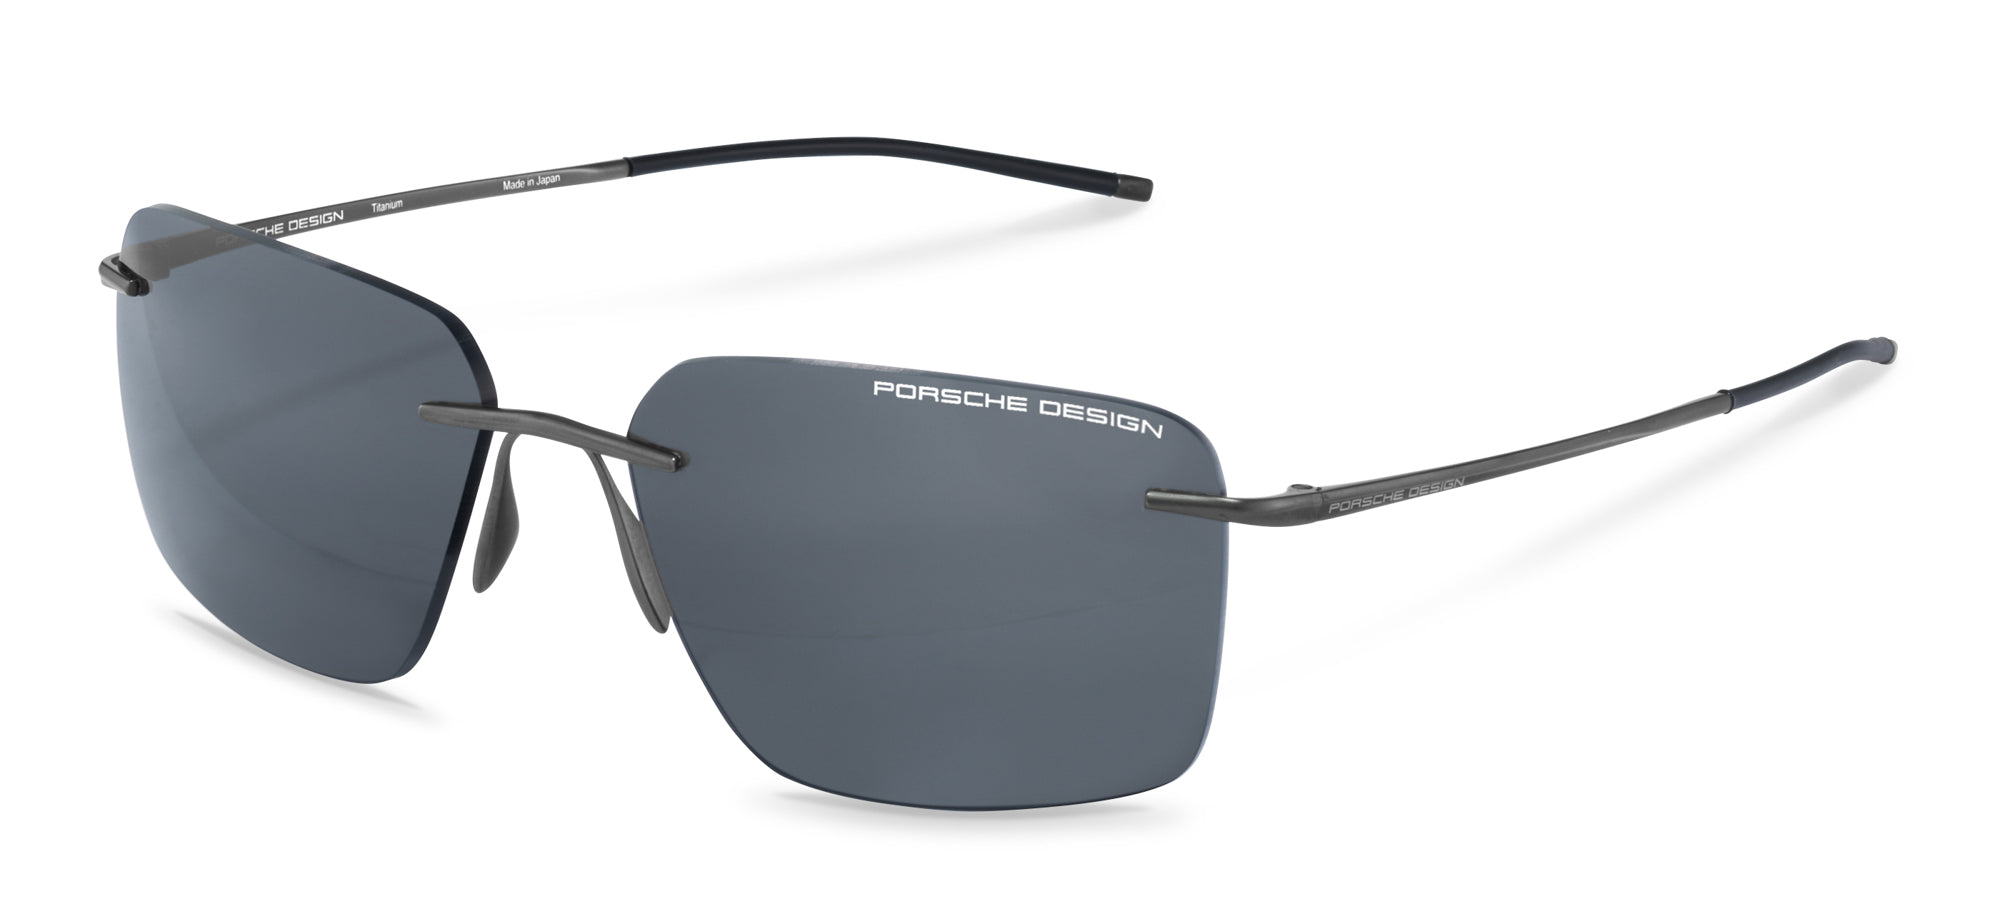 Porsche Design P8923 Square Sunglasses